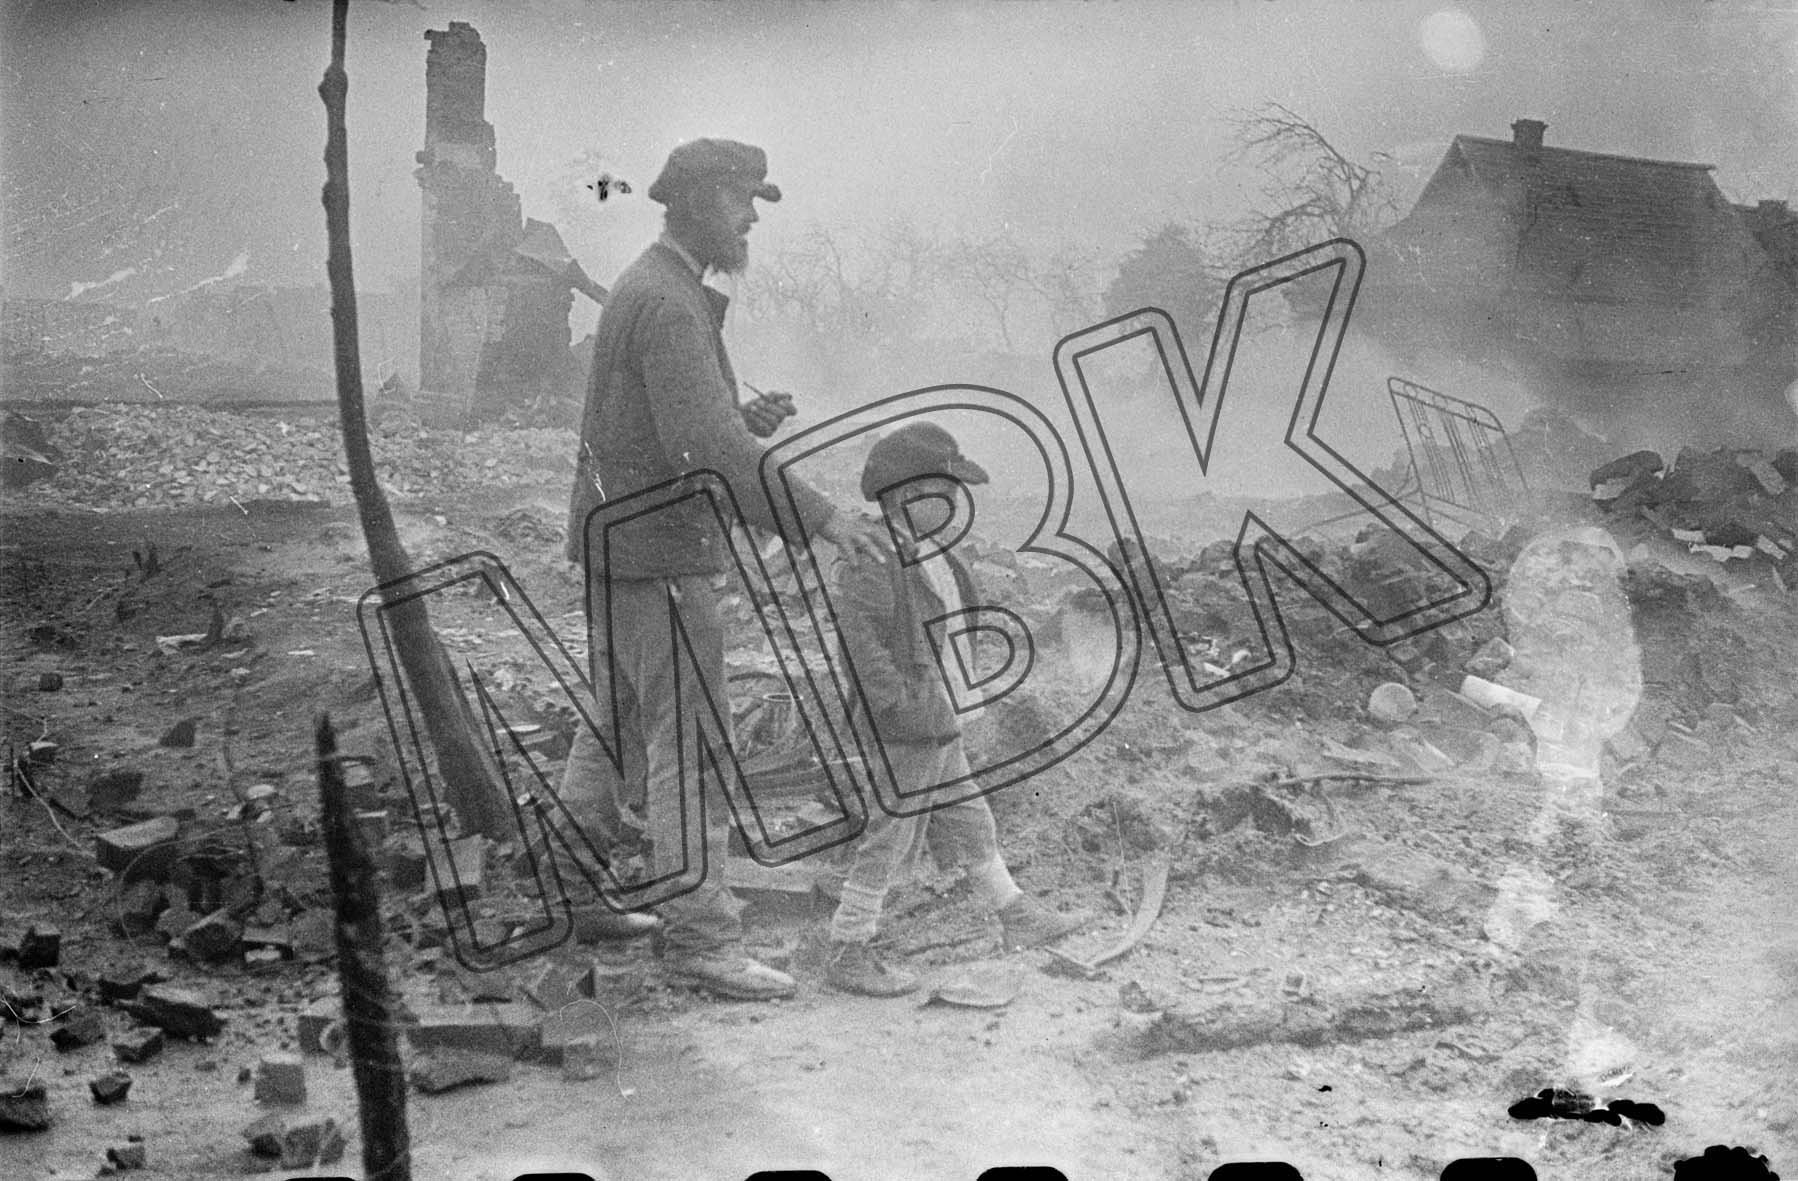 Fotografie: Zerstörungen im Dorf Uljanovo, vermutlich Gebiet Kaluga, Juli 1943 (Museum Berlin-Karlshorst RR-P)